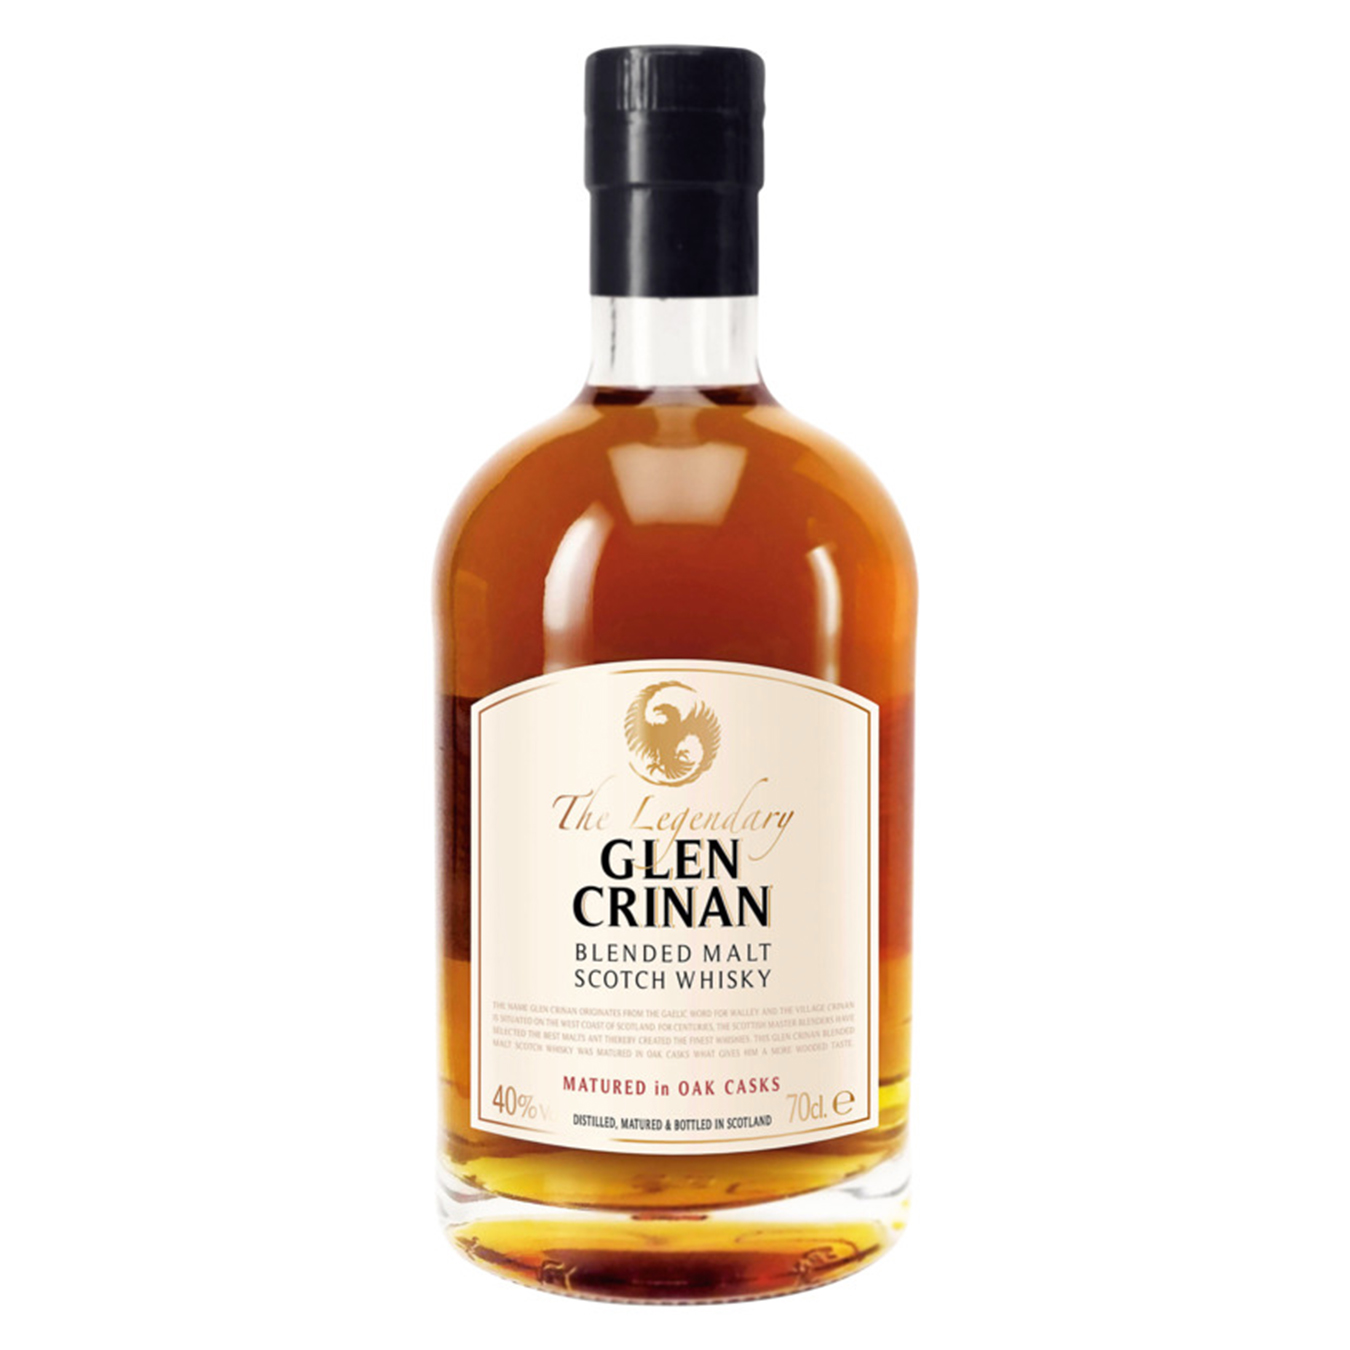 Glen Crinan The Legendary whisky 40% 0,7l